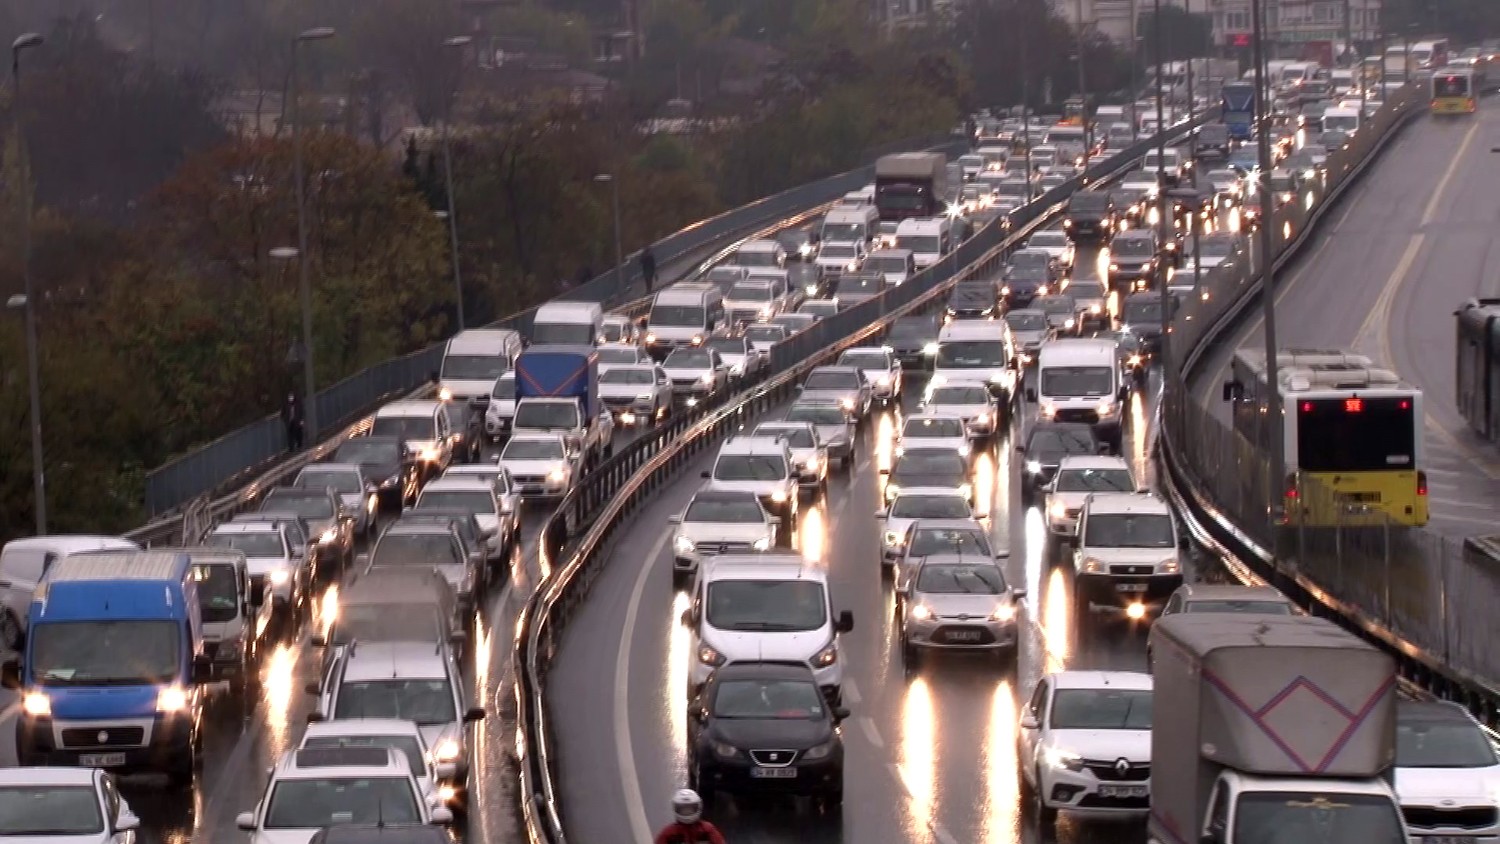 yagisli hava nedeniyle trafik yogunlugu yuzde 76 oldu yeni safak